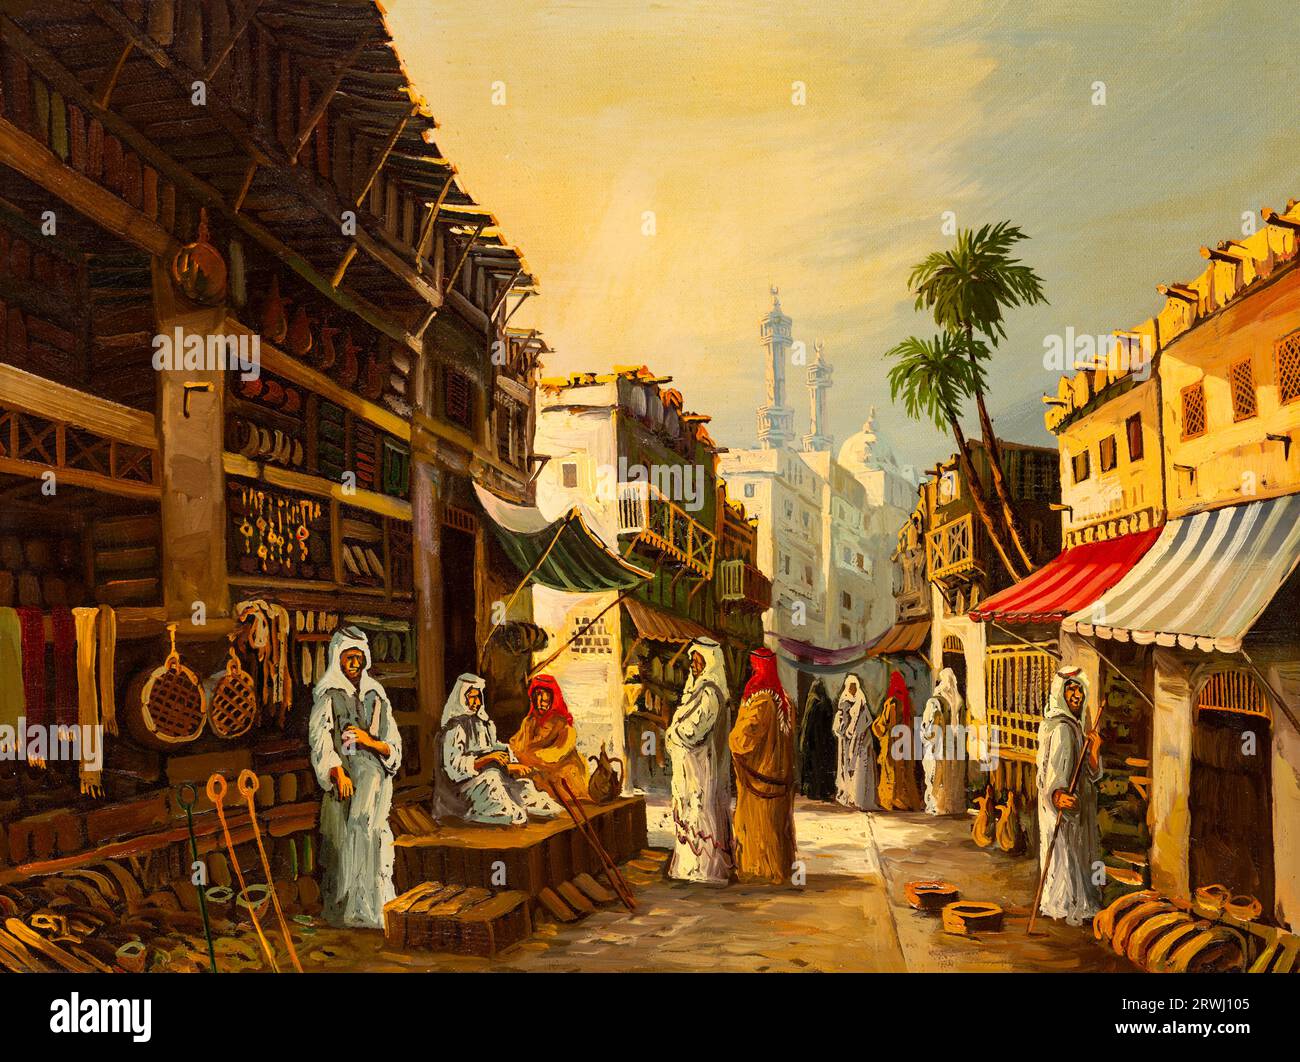 Vintage-Ölgemälde mit einem alten Marktplatz aus dem Nahen Osten, möglicherweise in Kairo, Ägypten, mit Ständen und einer Vielzahl von Waren. Stockfoto